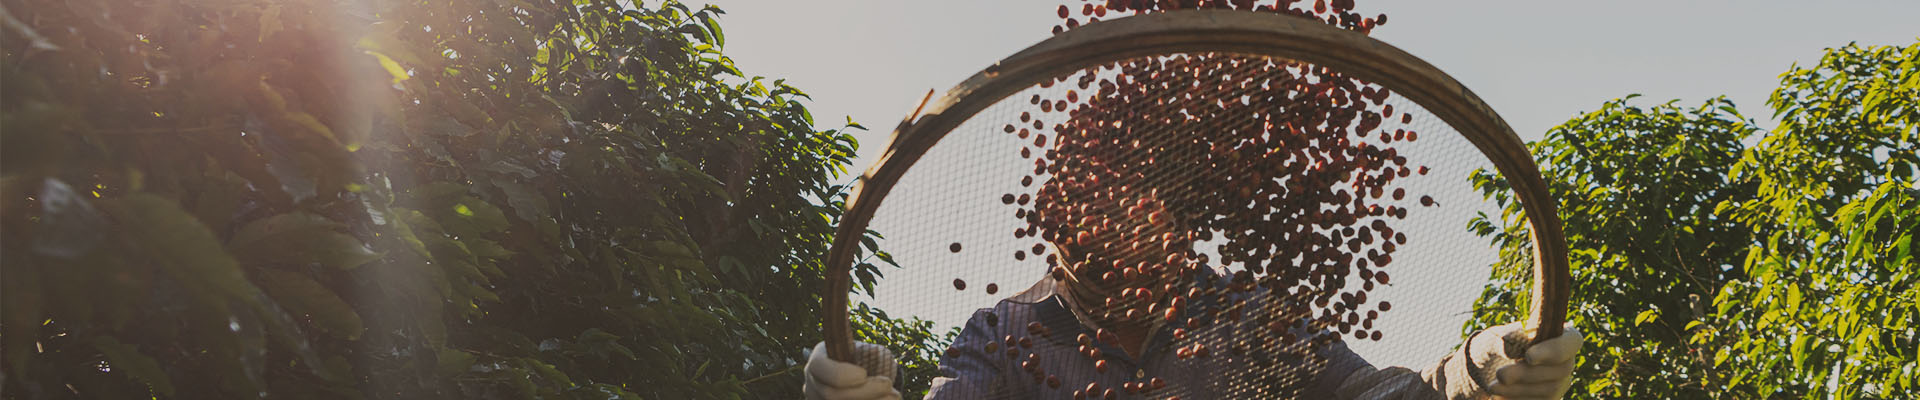 En kaffefarmer står blandt kaffeplanter og ryster kaffebær i en stor si for at sortere bærene.